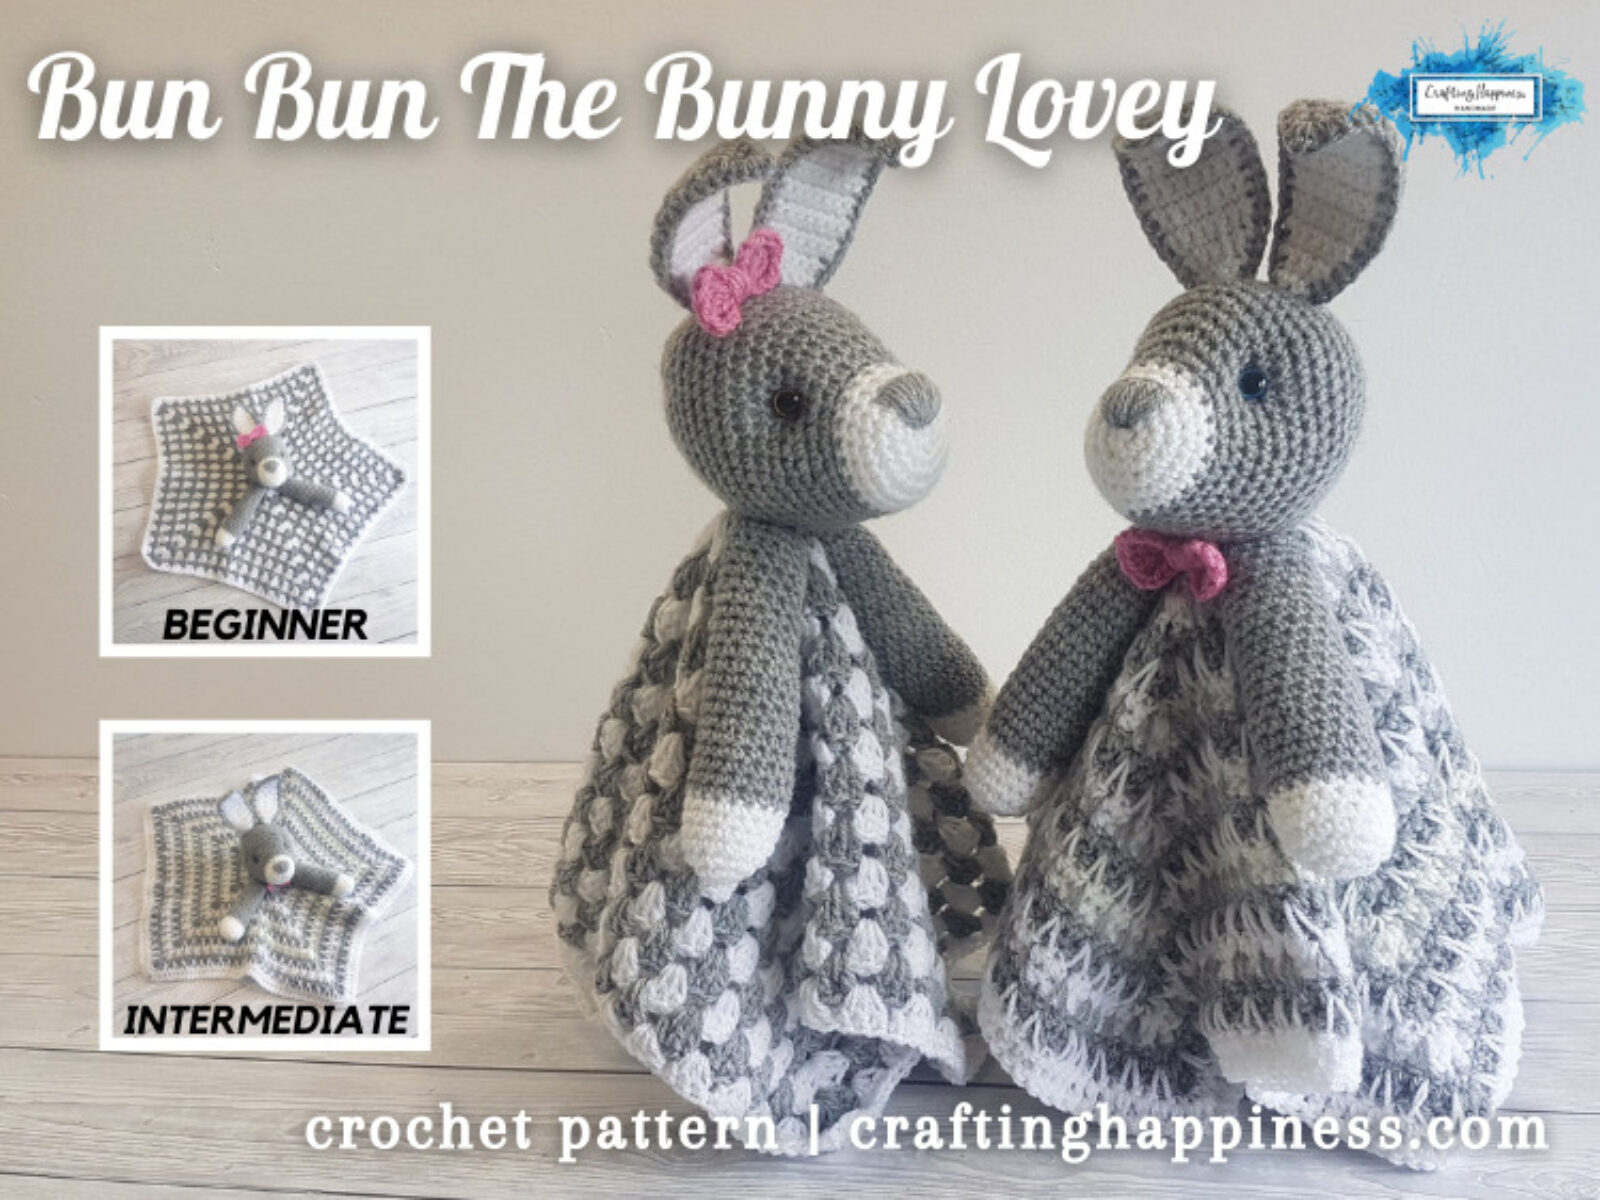 FACEBOOK BLOG POSTER - Bun Bun The Bunny Lovey Crafting Happiness